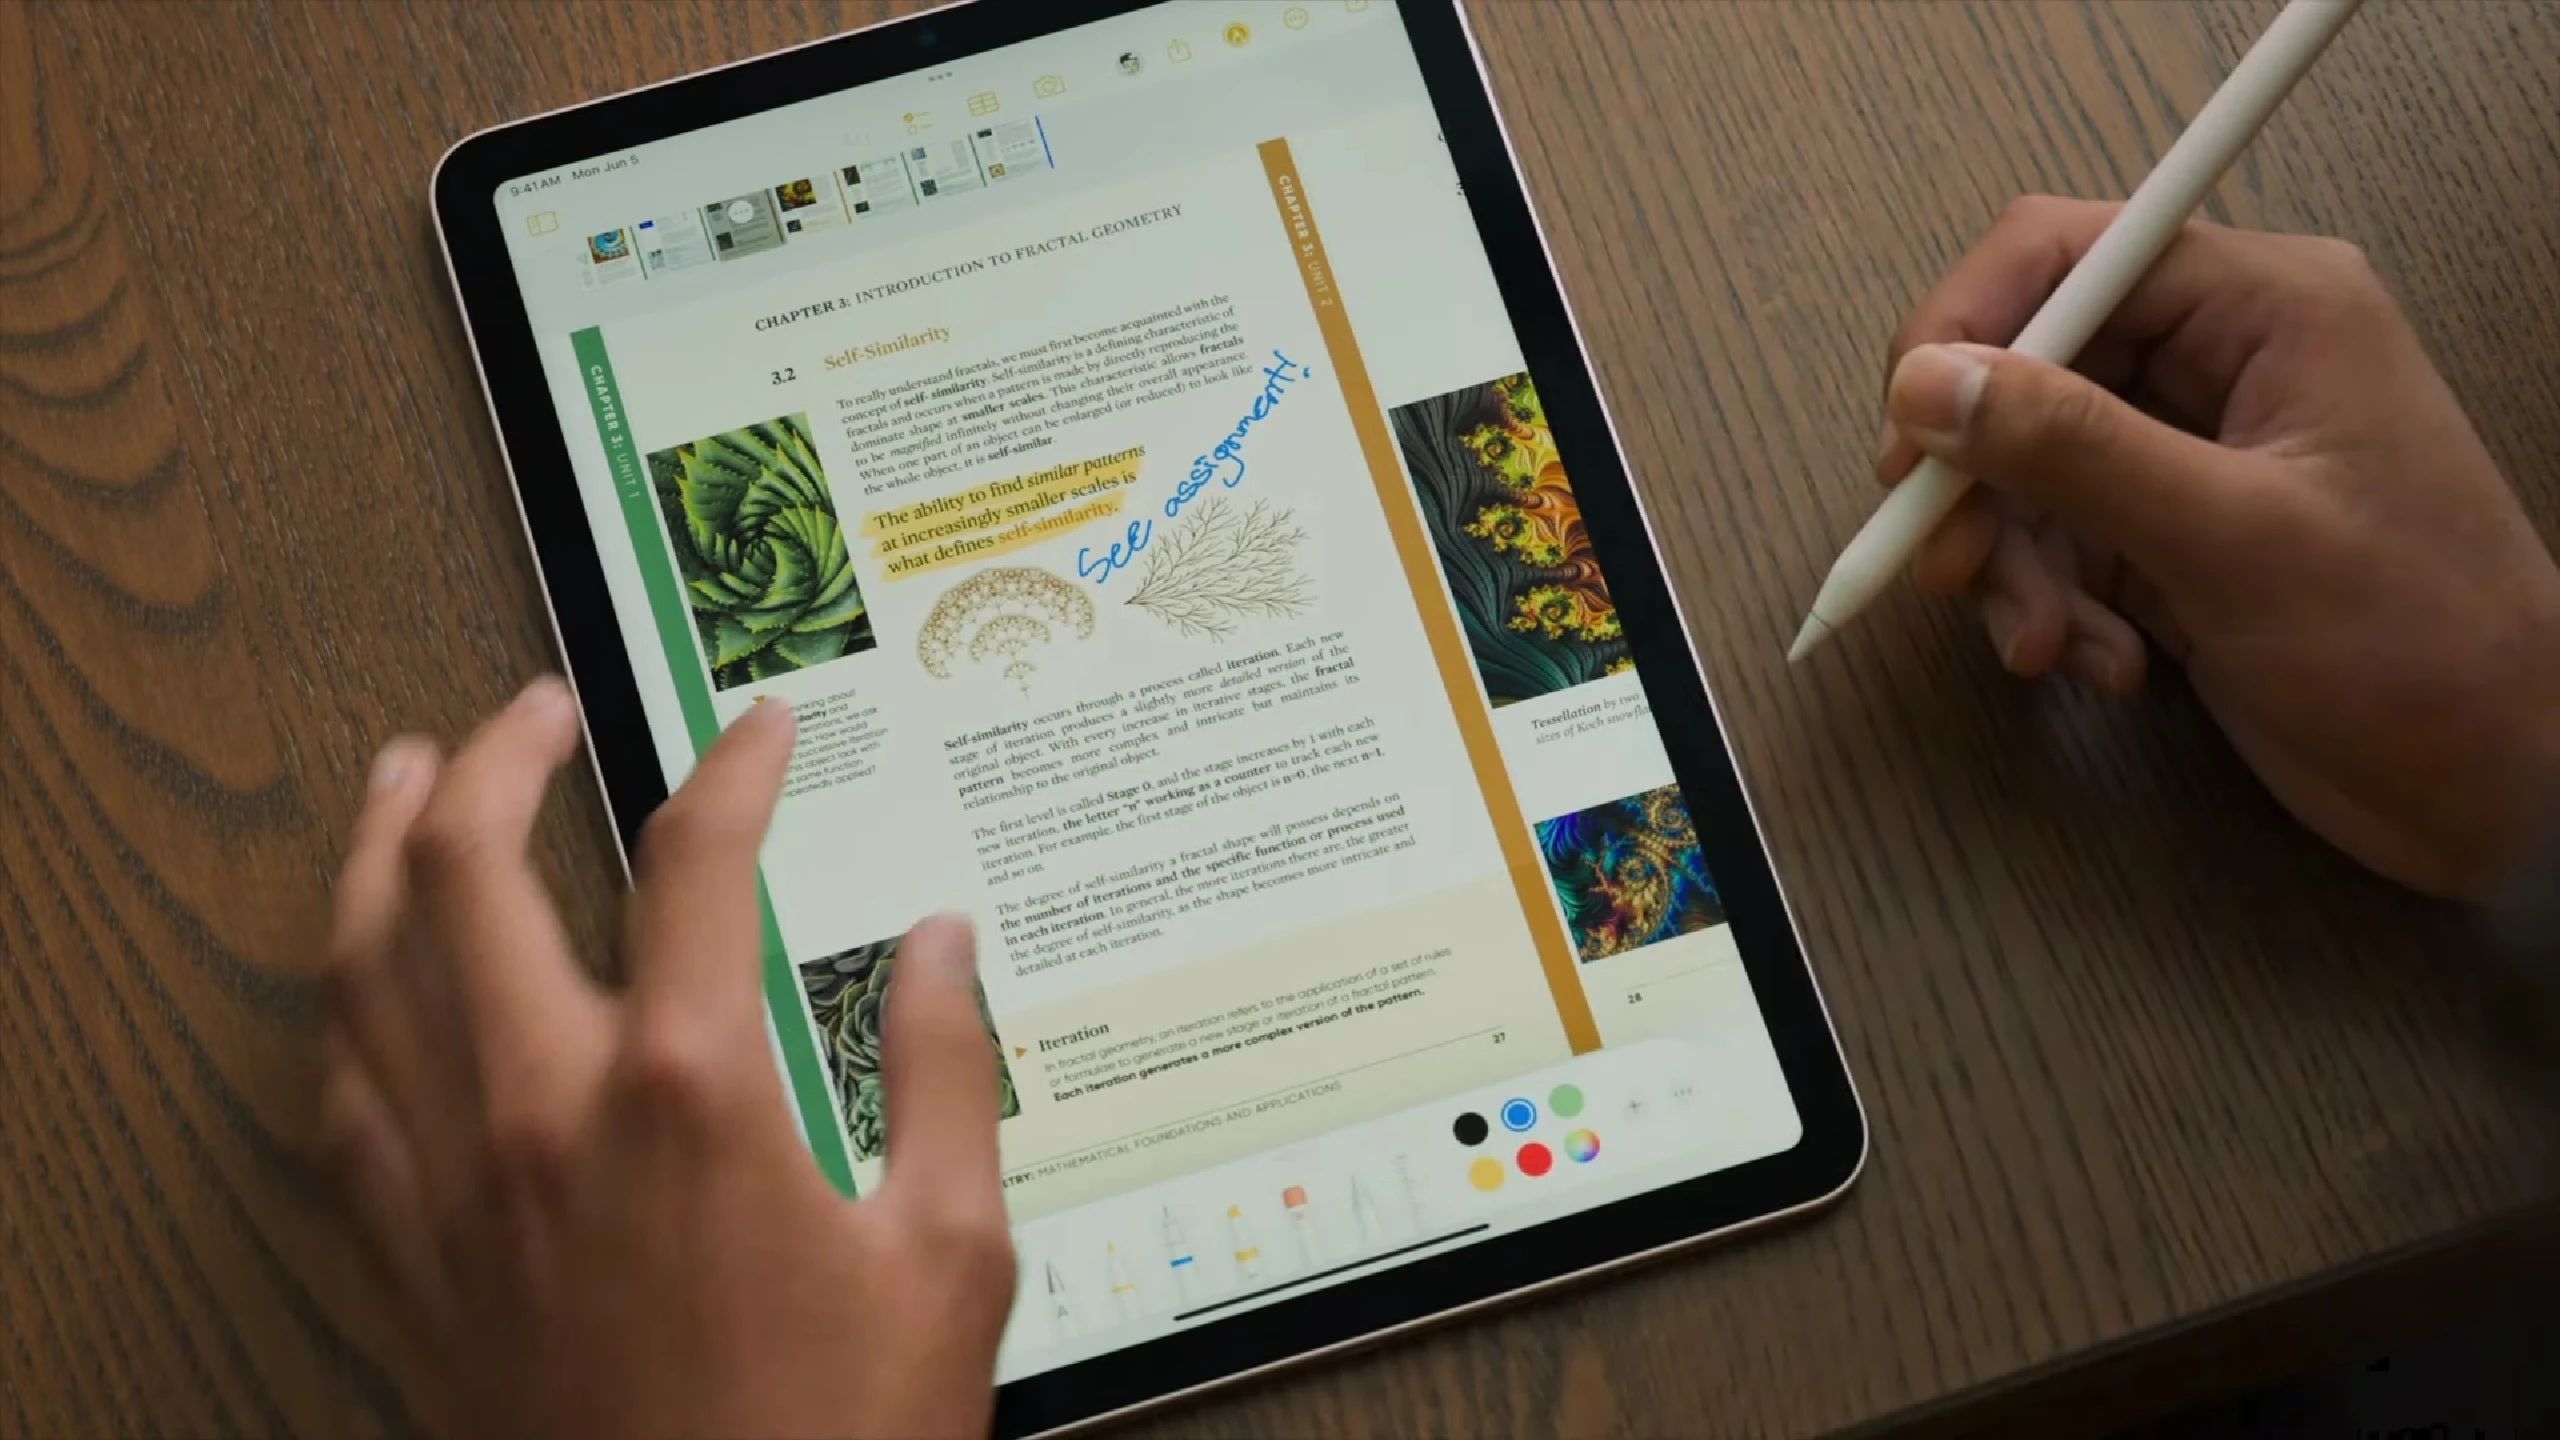 Itt az iPadOS 17 Live Widgets és Health for iPad funkcióval